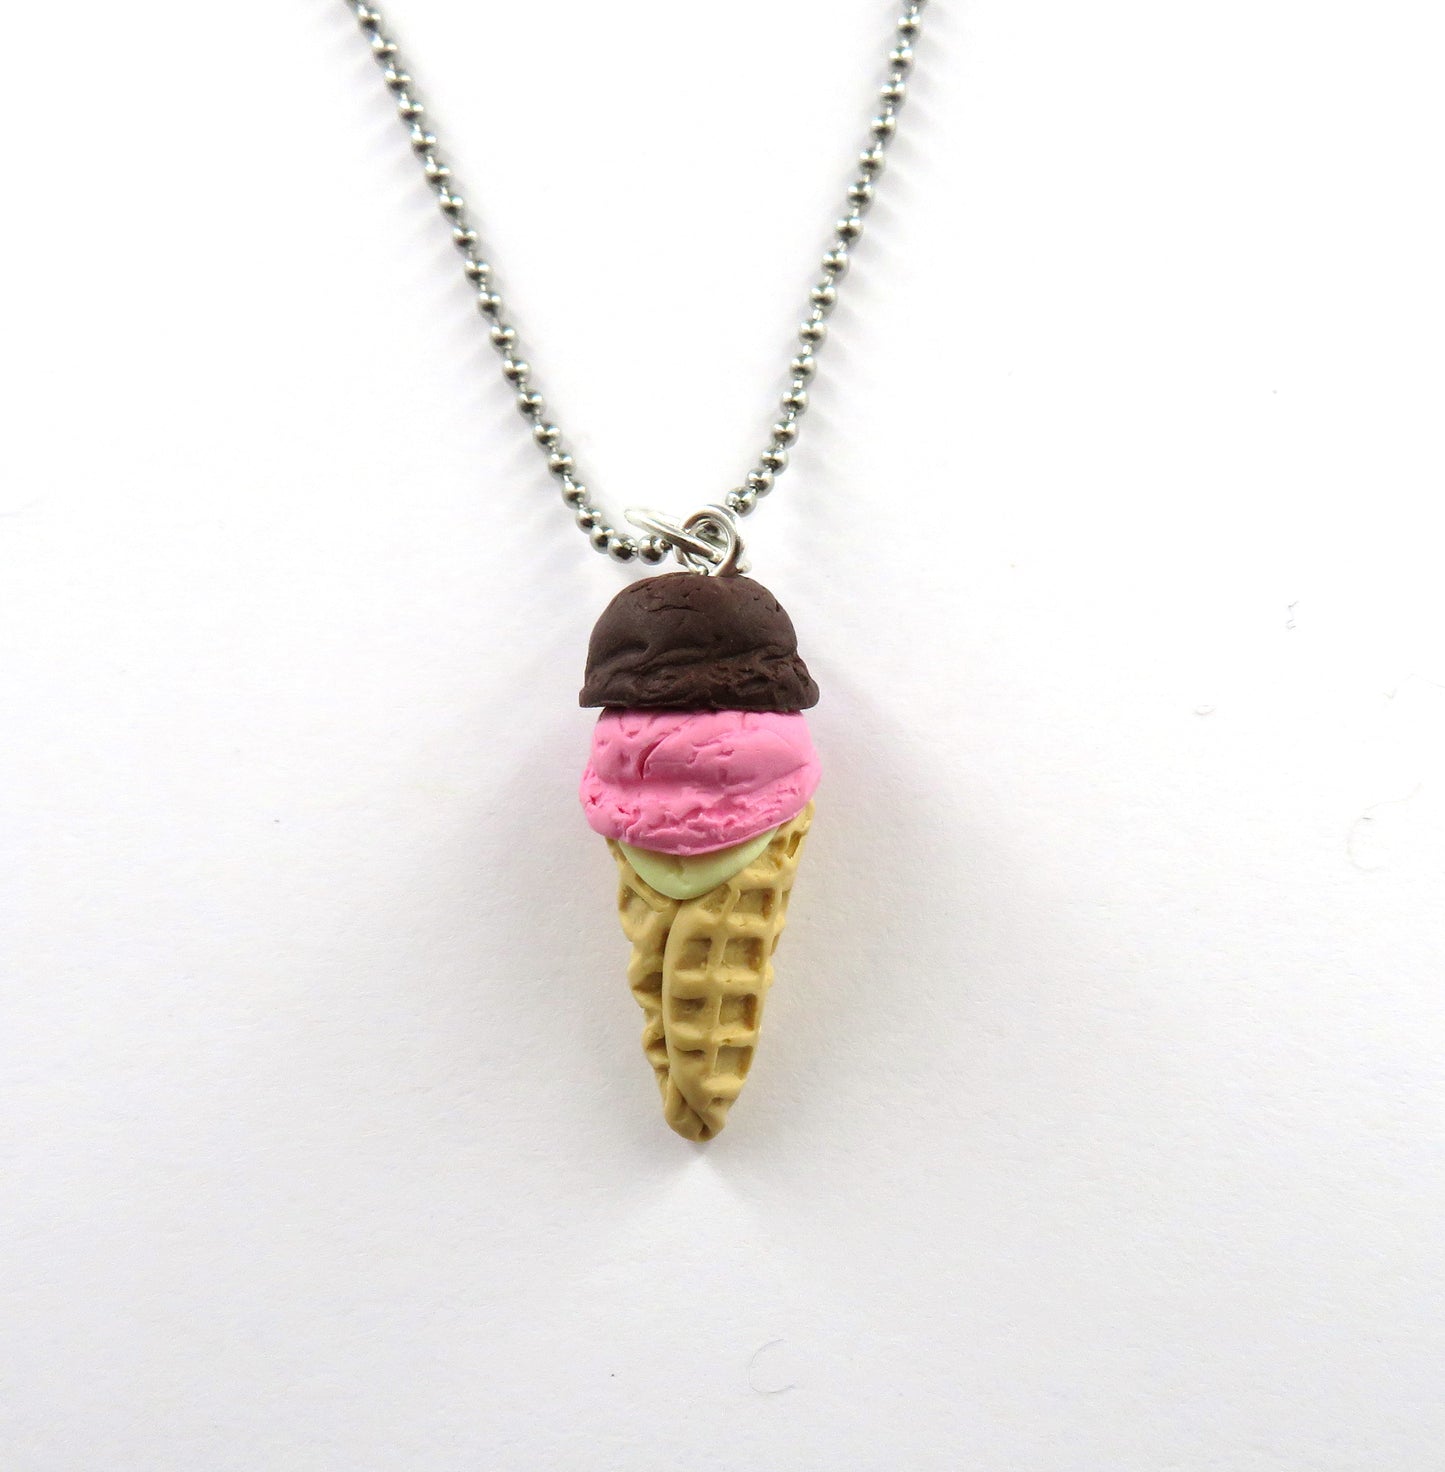 Neopolitan Ice Cream Cone Necklace